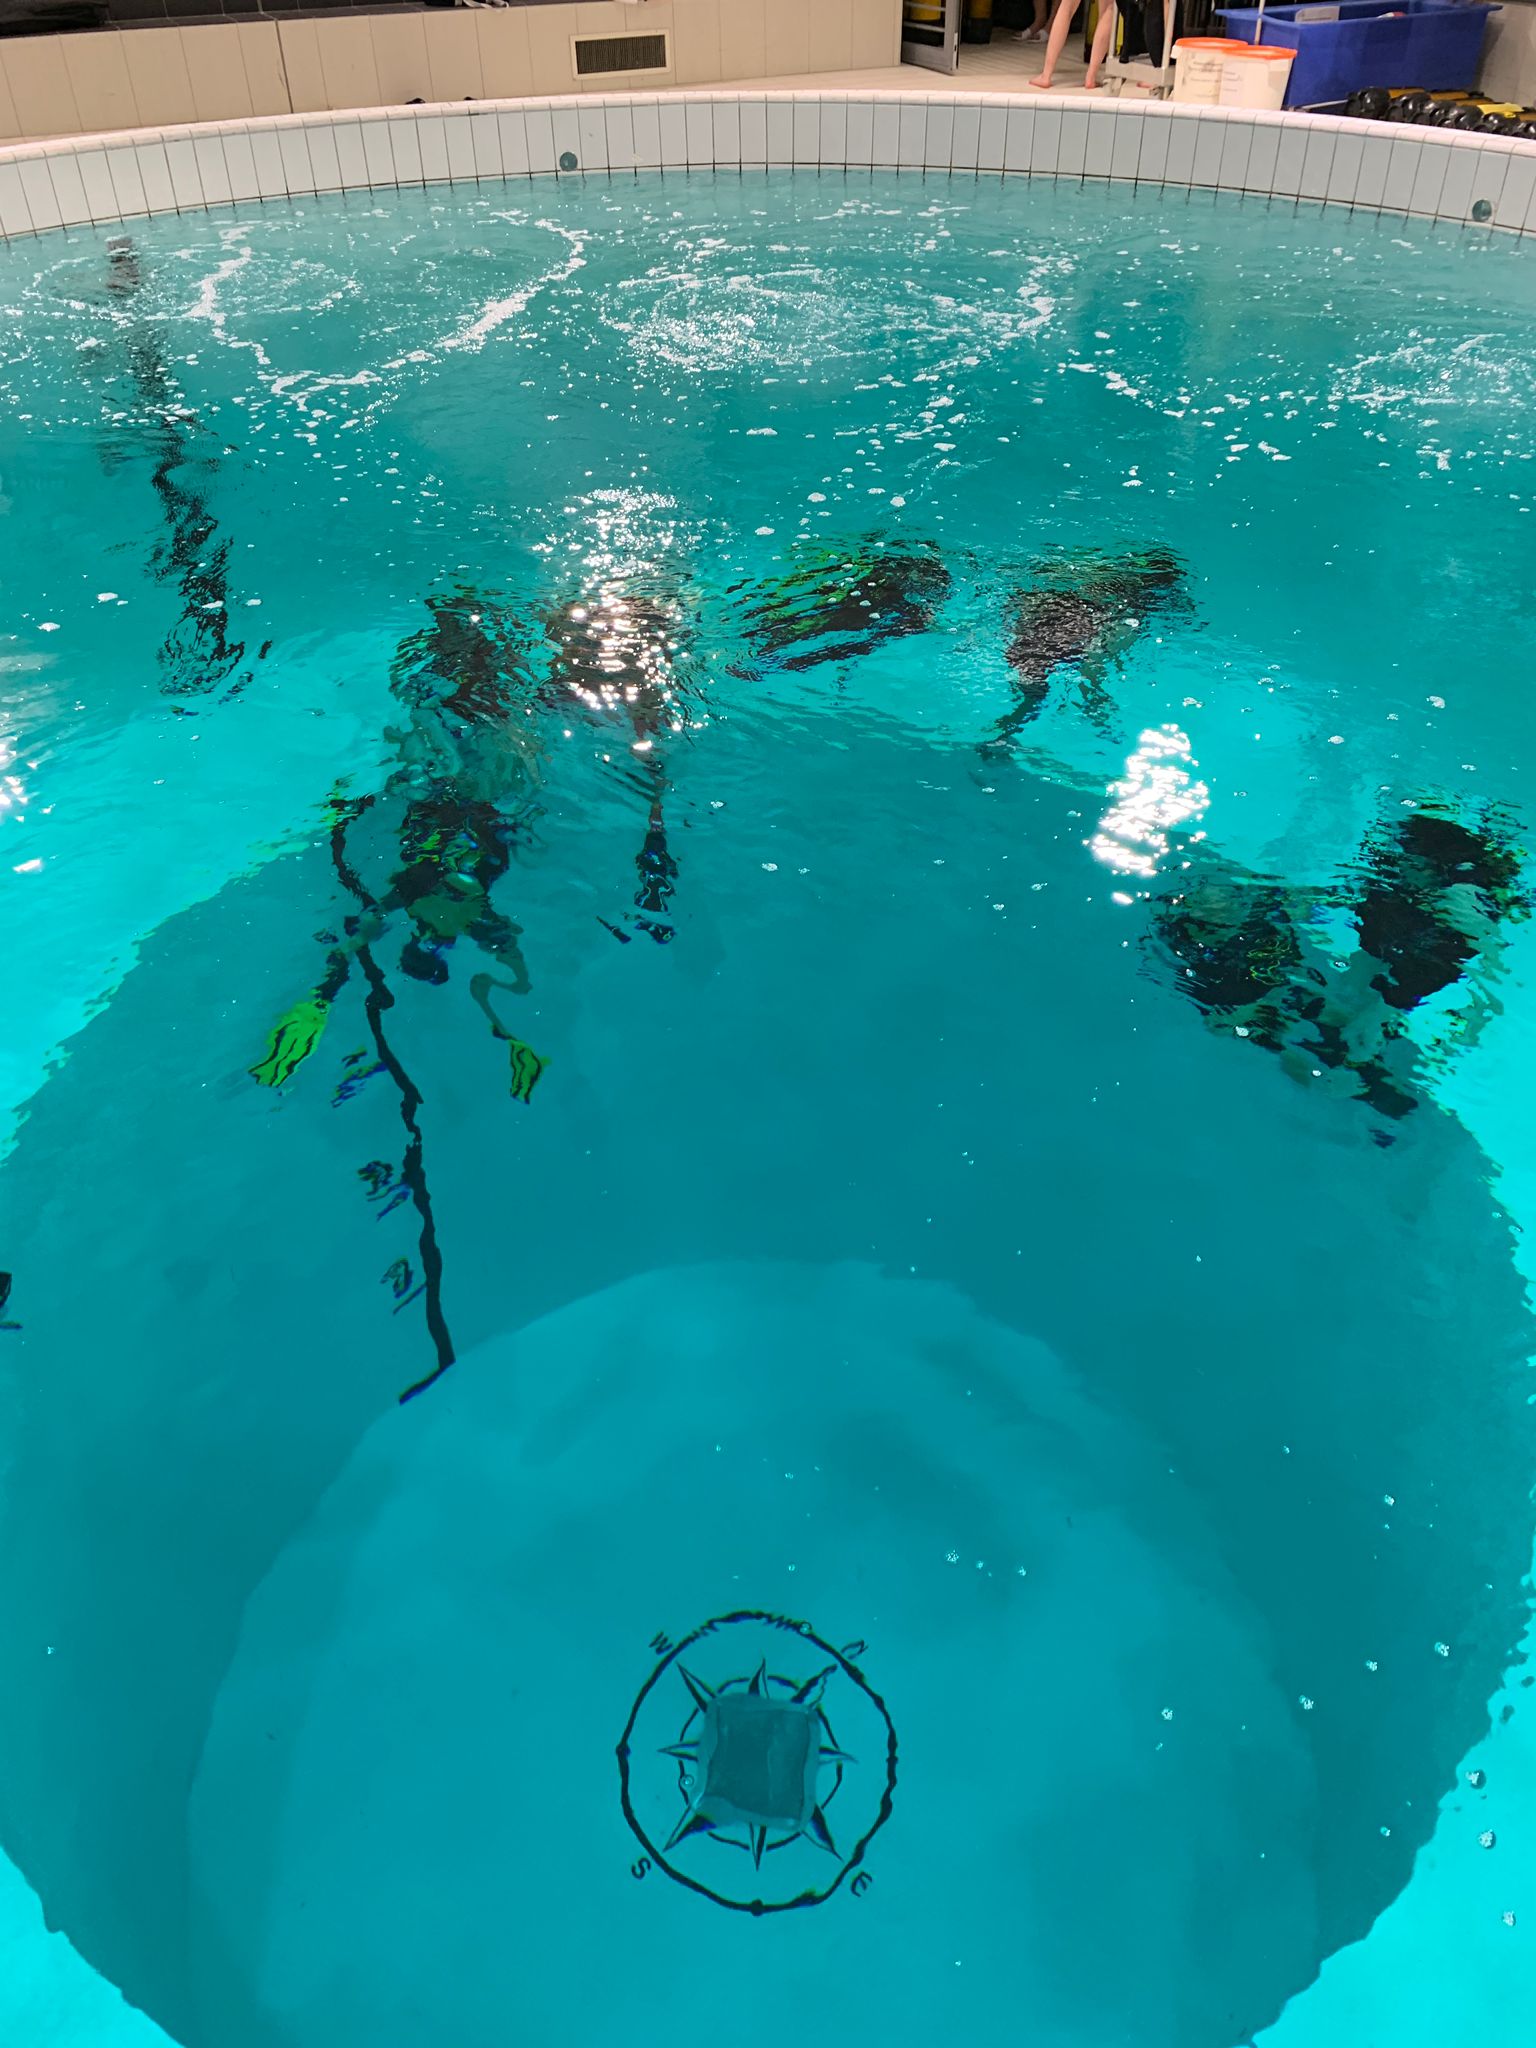 Fosse au Centre aquatique Youri-Gagarine à Argenteuil mise à disposition pour baptême de plongée de personnes en situation de handicap accompagnées par l'équipe de l'association Balnéo-Handicap (Hôpital de Garches)